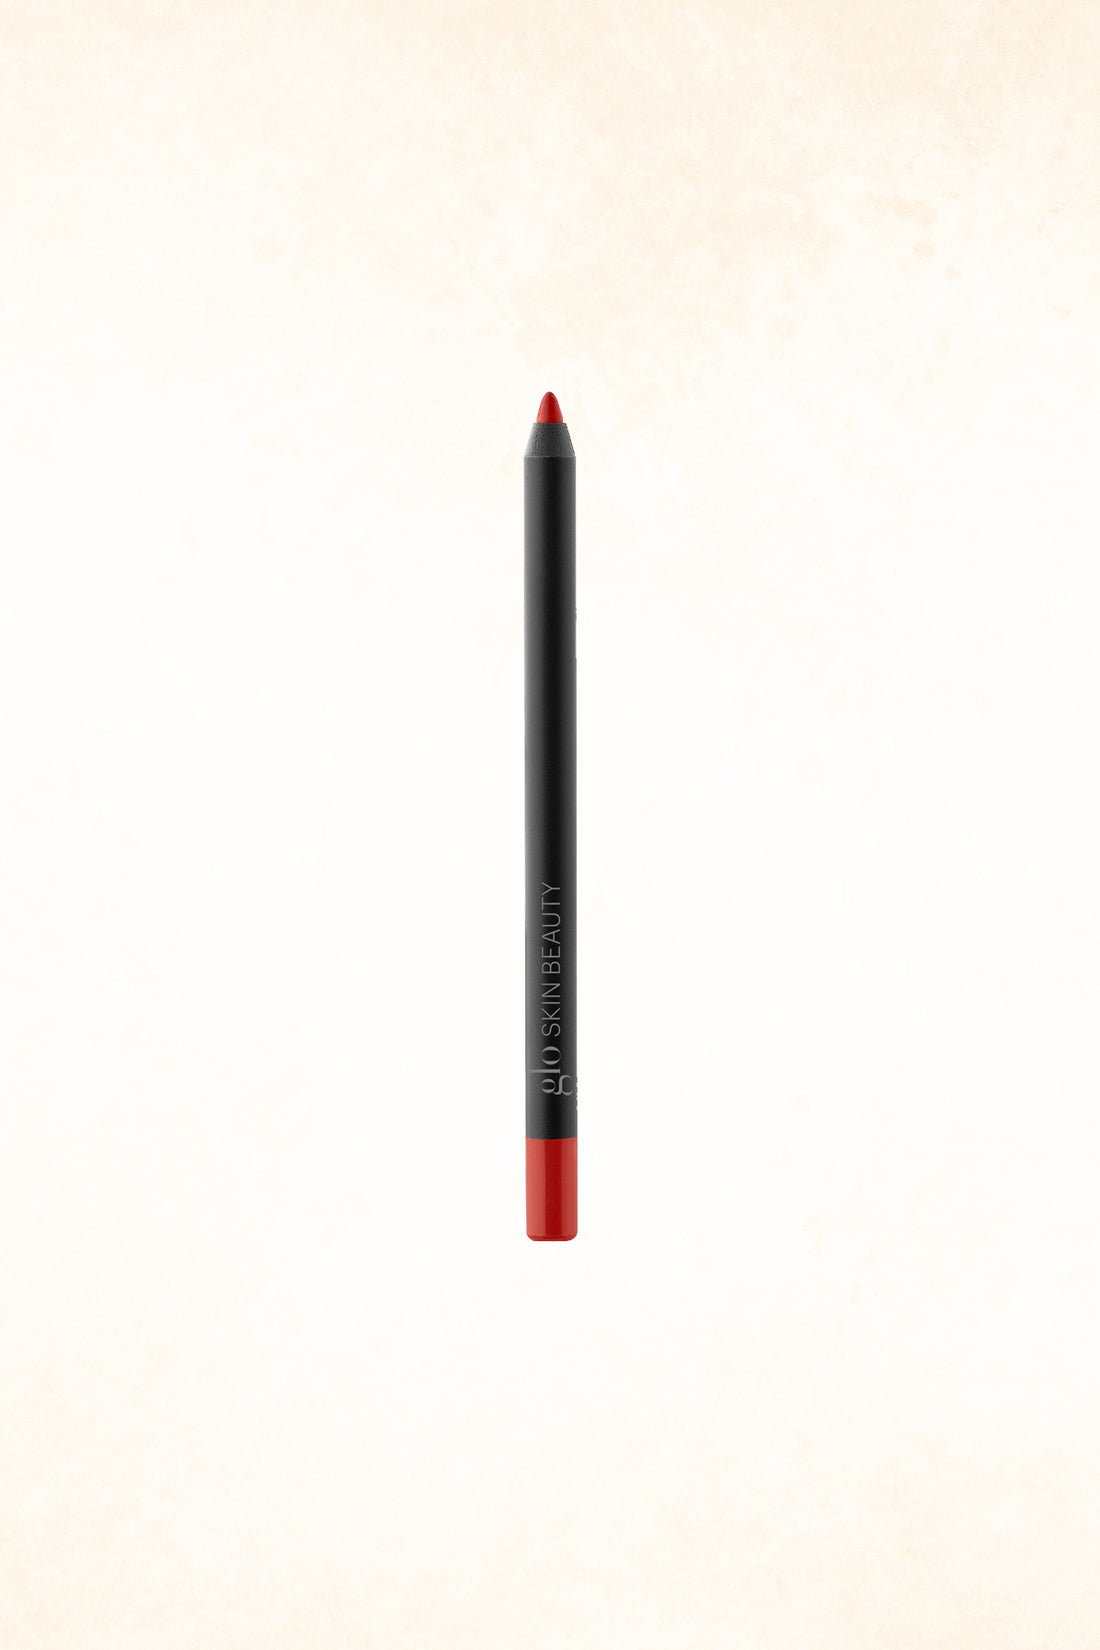 Glo Skin Beauty – Precision Lip Pencil - Moxie